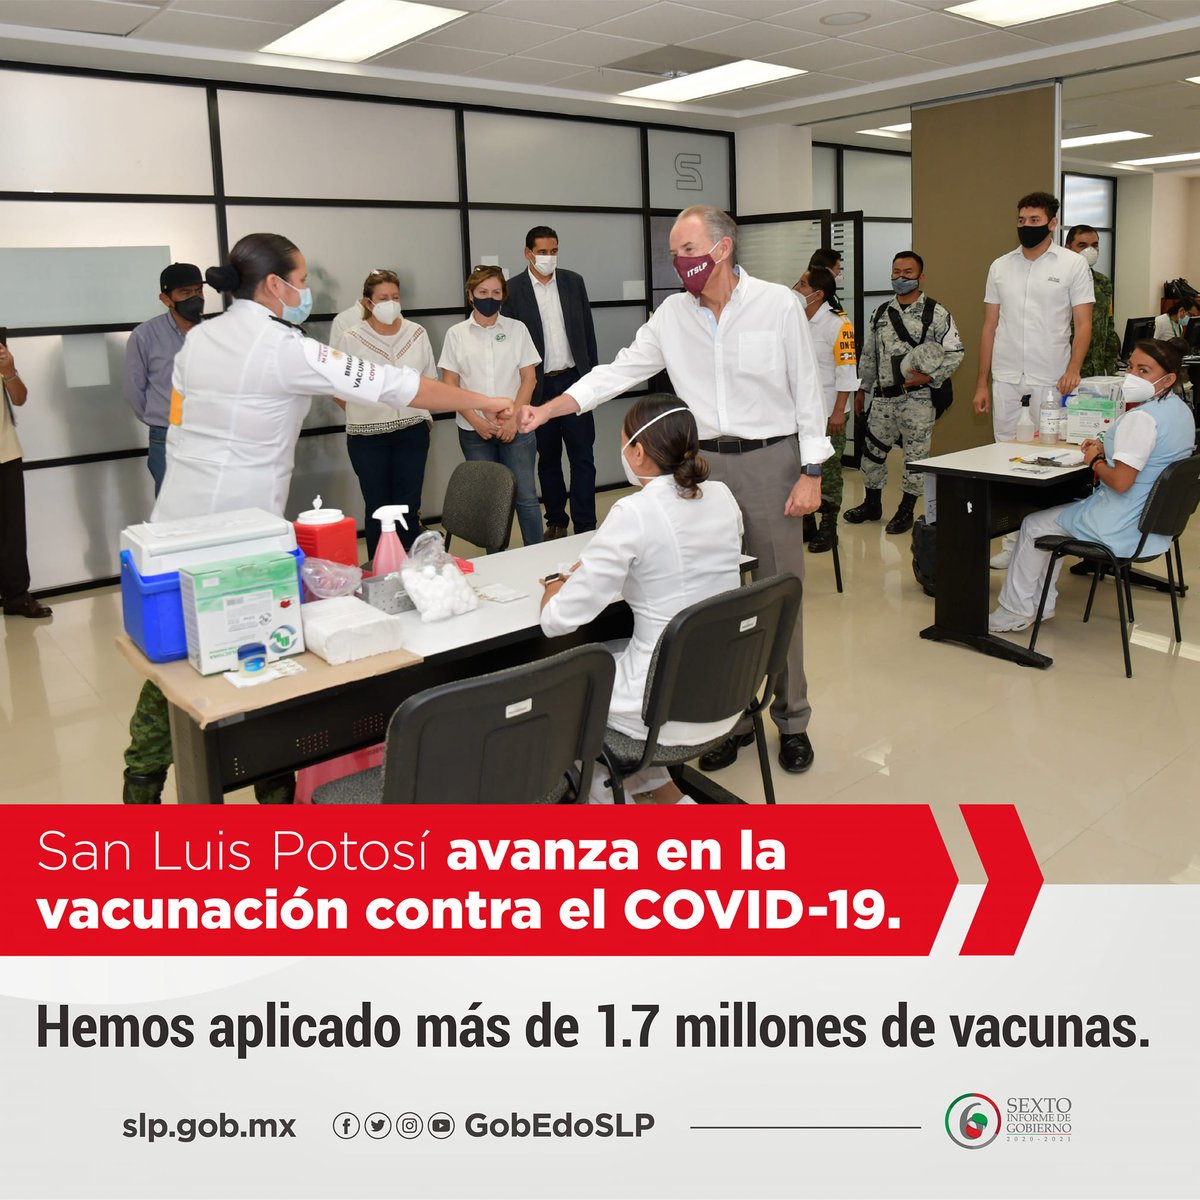 San Luis Potosí avanza en la vacunación contra #COVID19, hemos aplicado en el estado más de 1.7 millones de vacunas.
#InformeJMCarreras